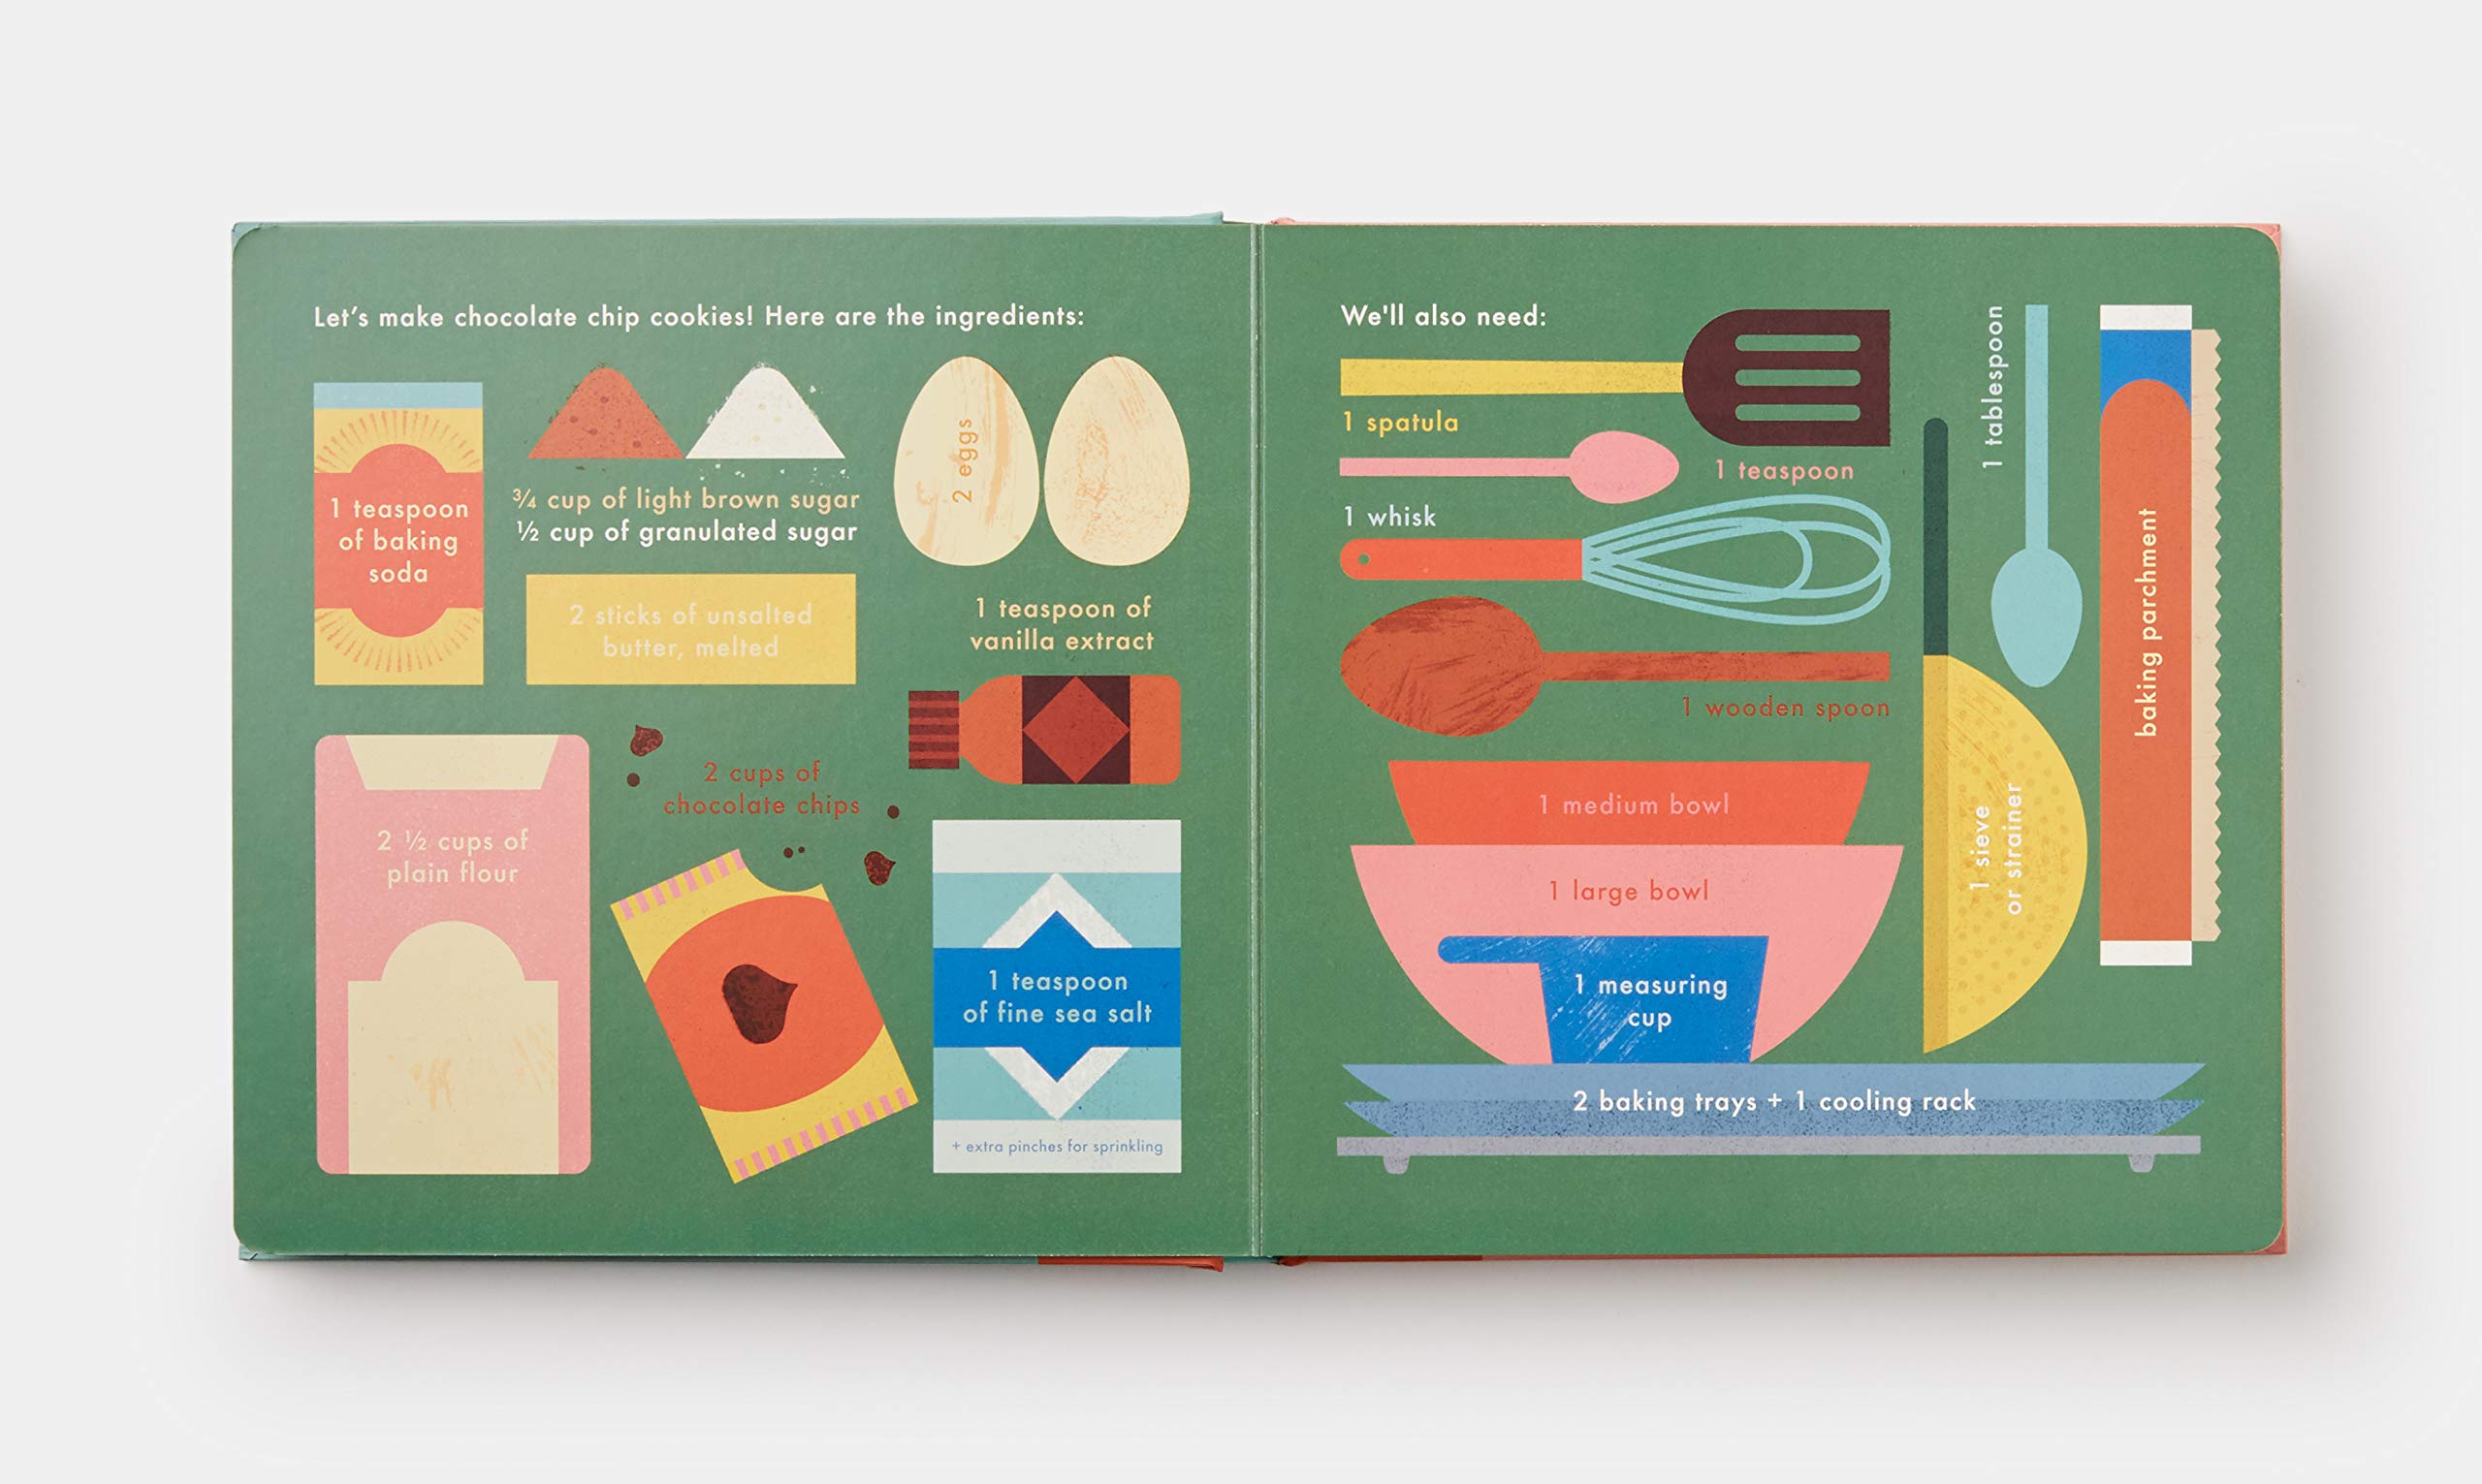 Cookies!: An Interactive Recipe Book (Cook In A Book) Board book